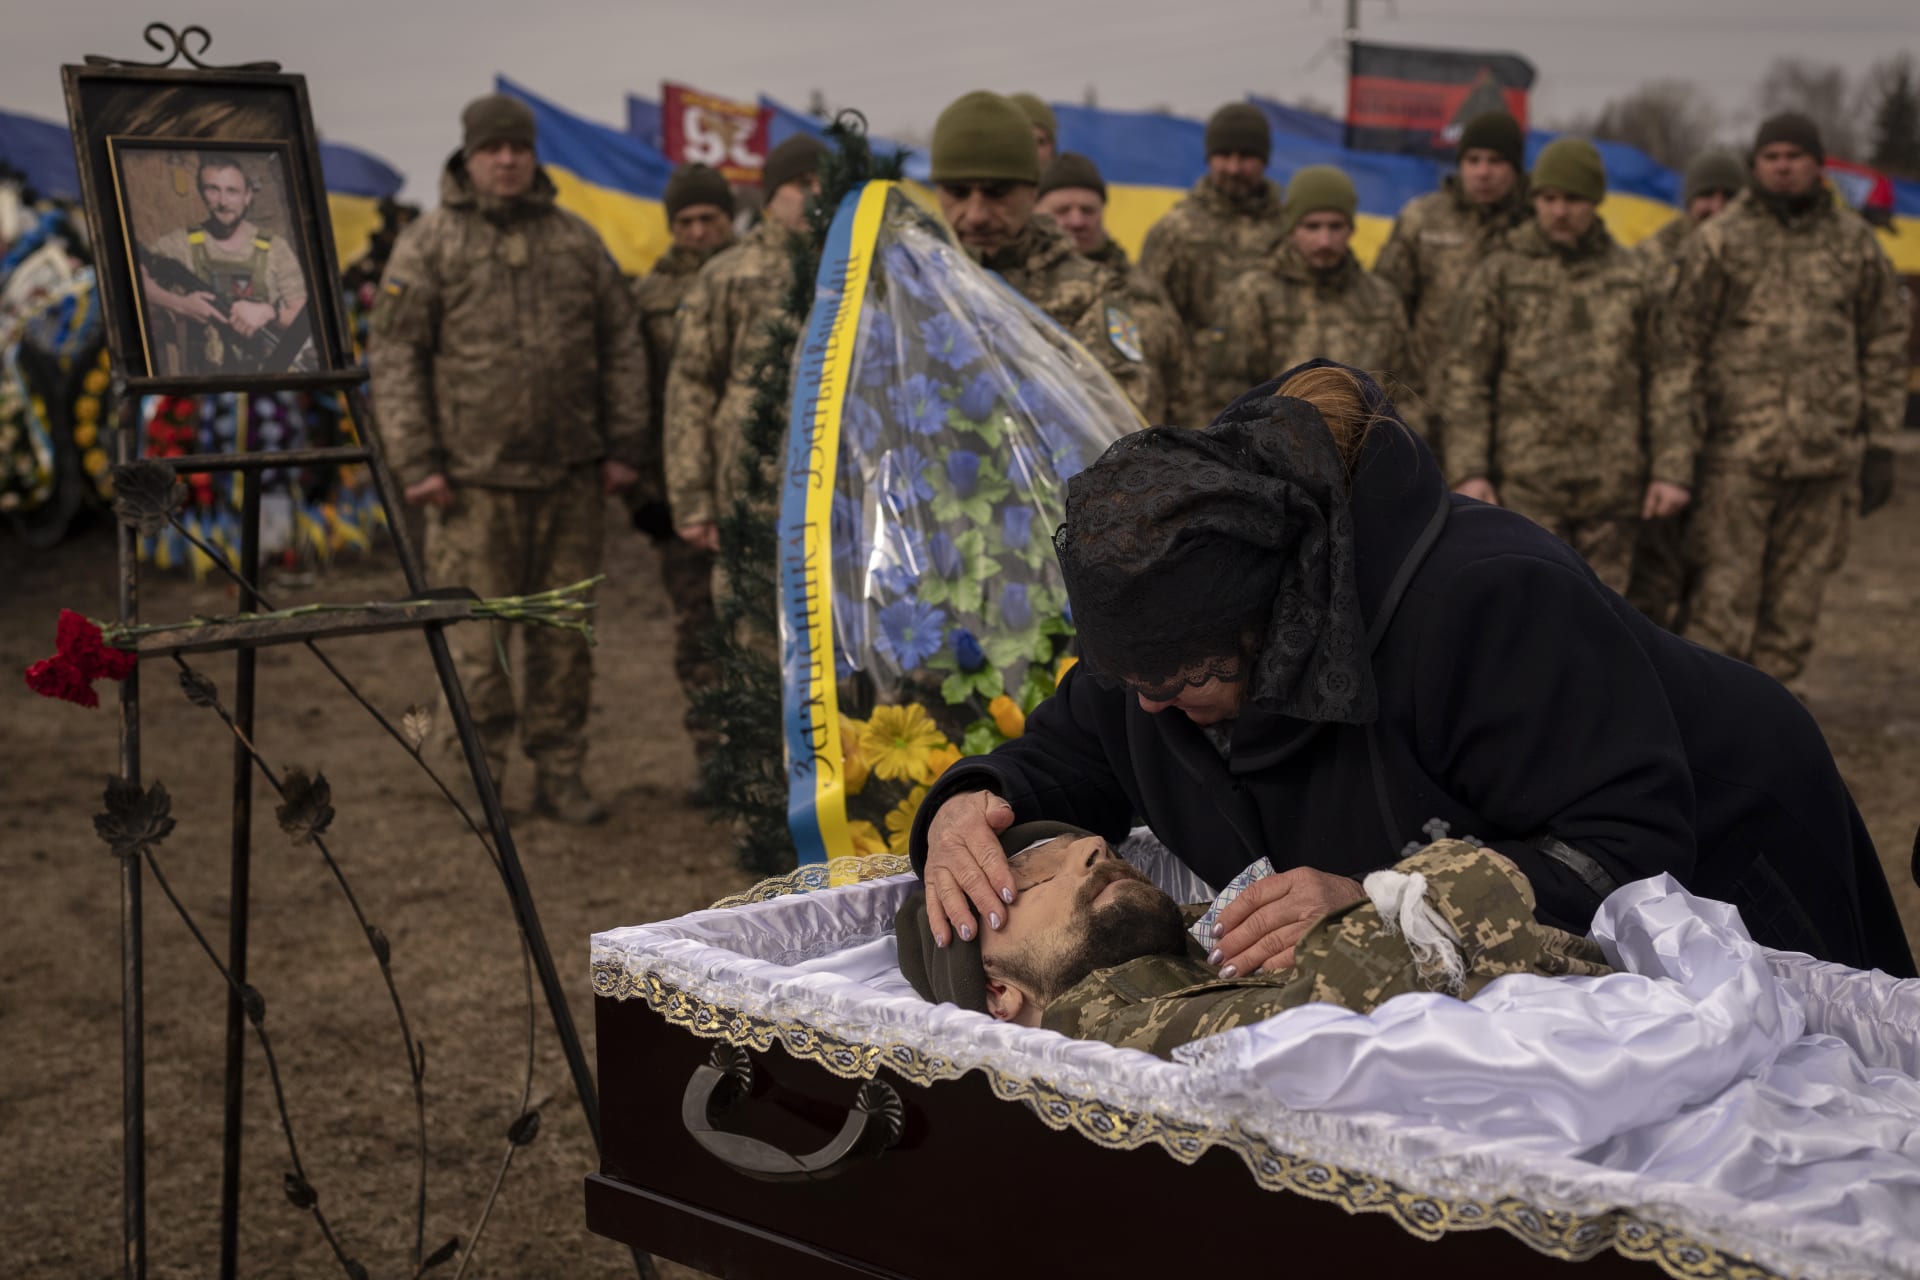 Matka na pohřbu v Boryspilu u Kyjeva oplakává smrt svého syna, který padl v bojích s Rusy u Bachmutu.